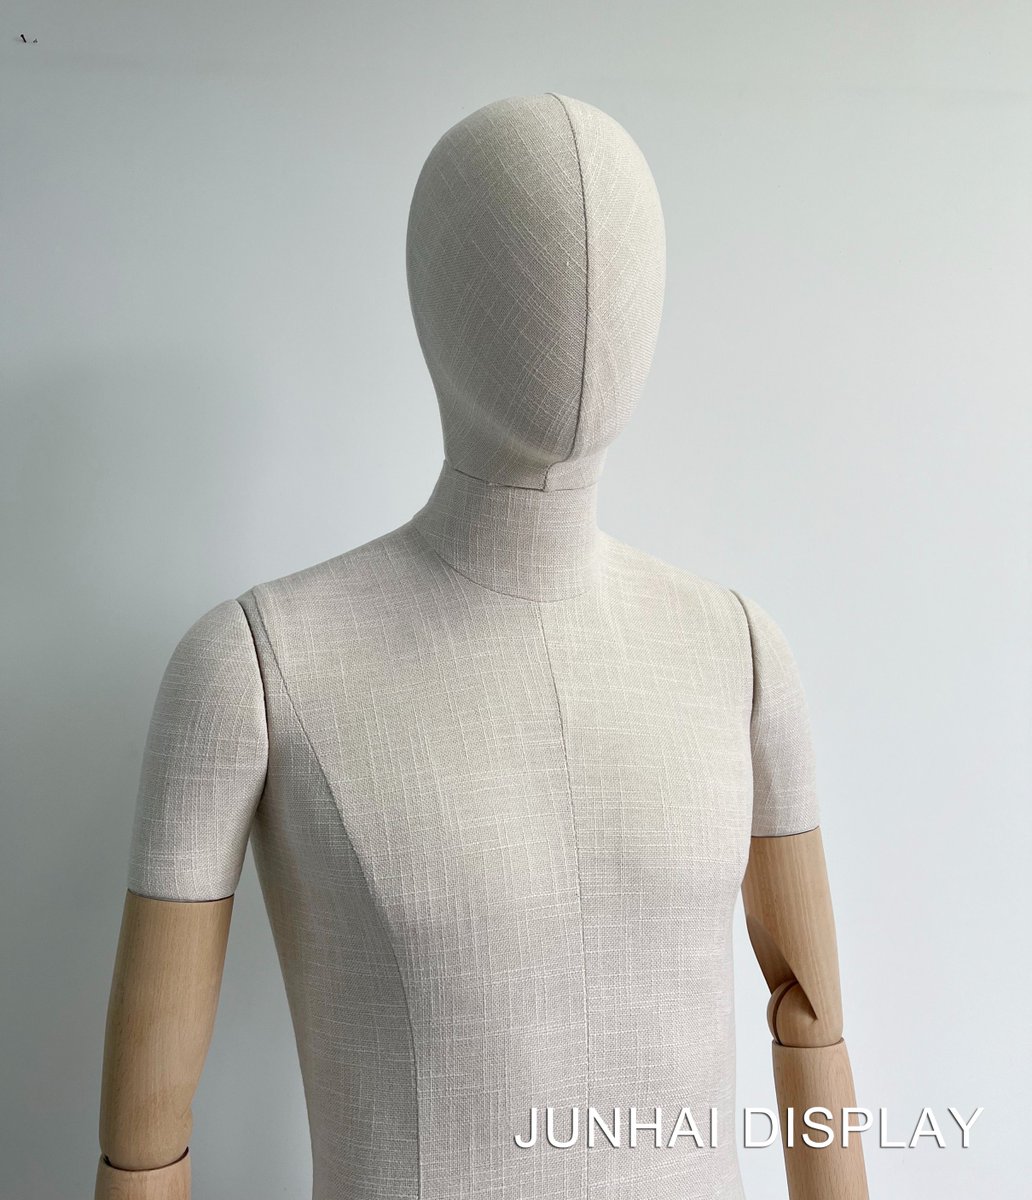 Fabric male mannequins with wooden arms

#malemannequins
#casualmannequin
#fabricmannequin
#articulatedmannequin
#retaildesign
#newmannequin
#maniquies
#visualdesign
#vm
#manichini
#manequim
#Junhai